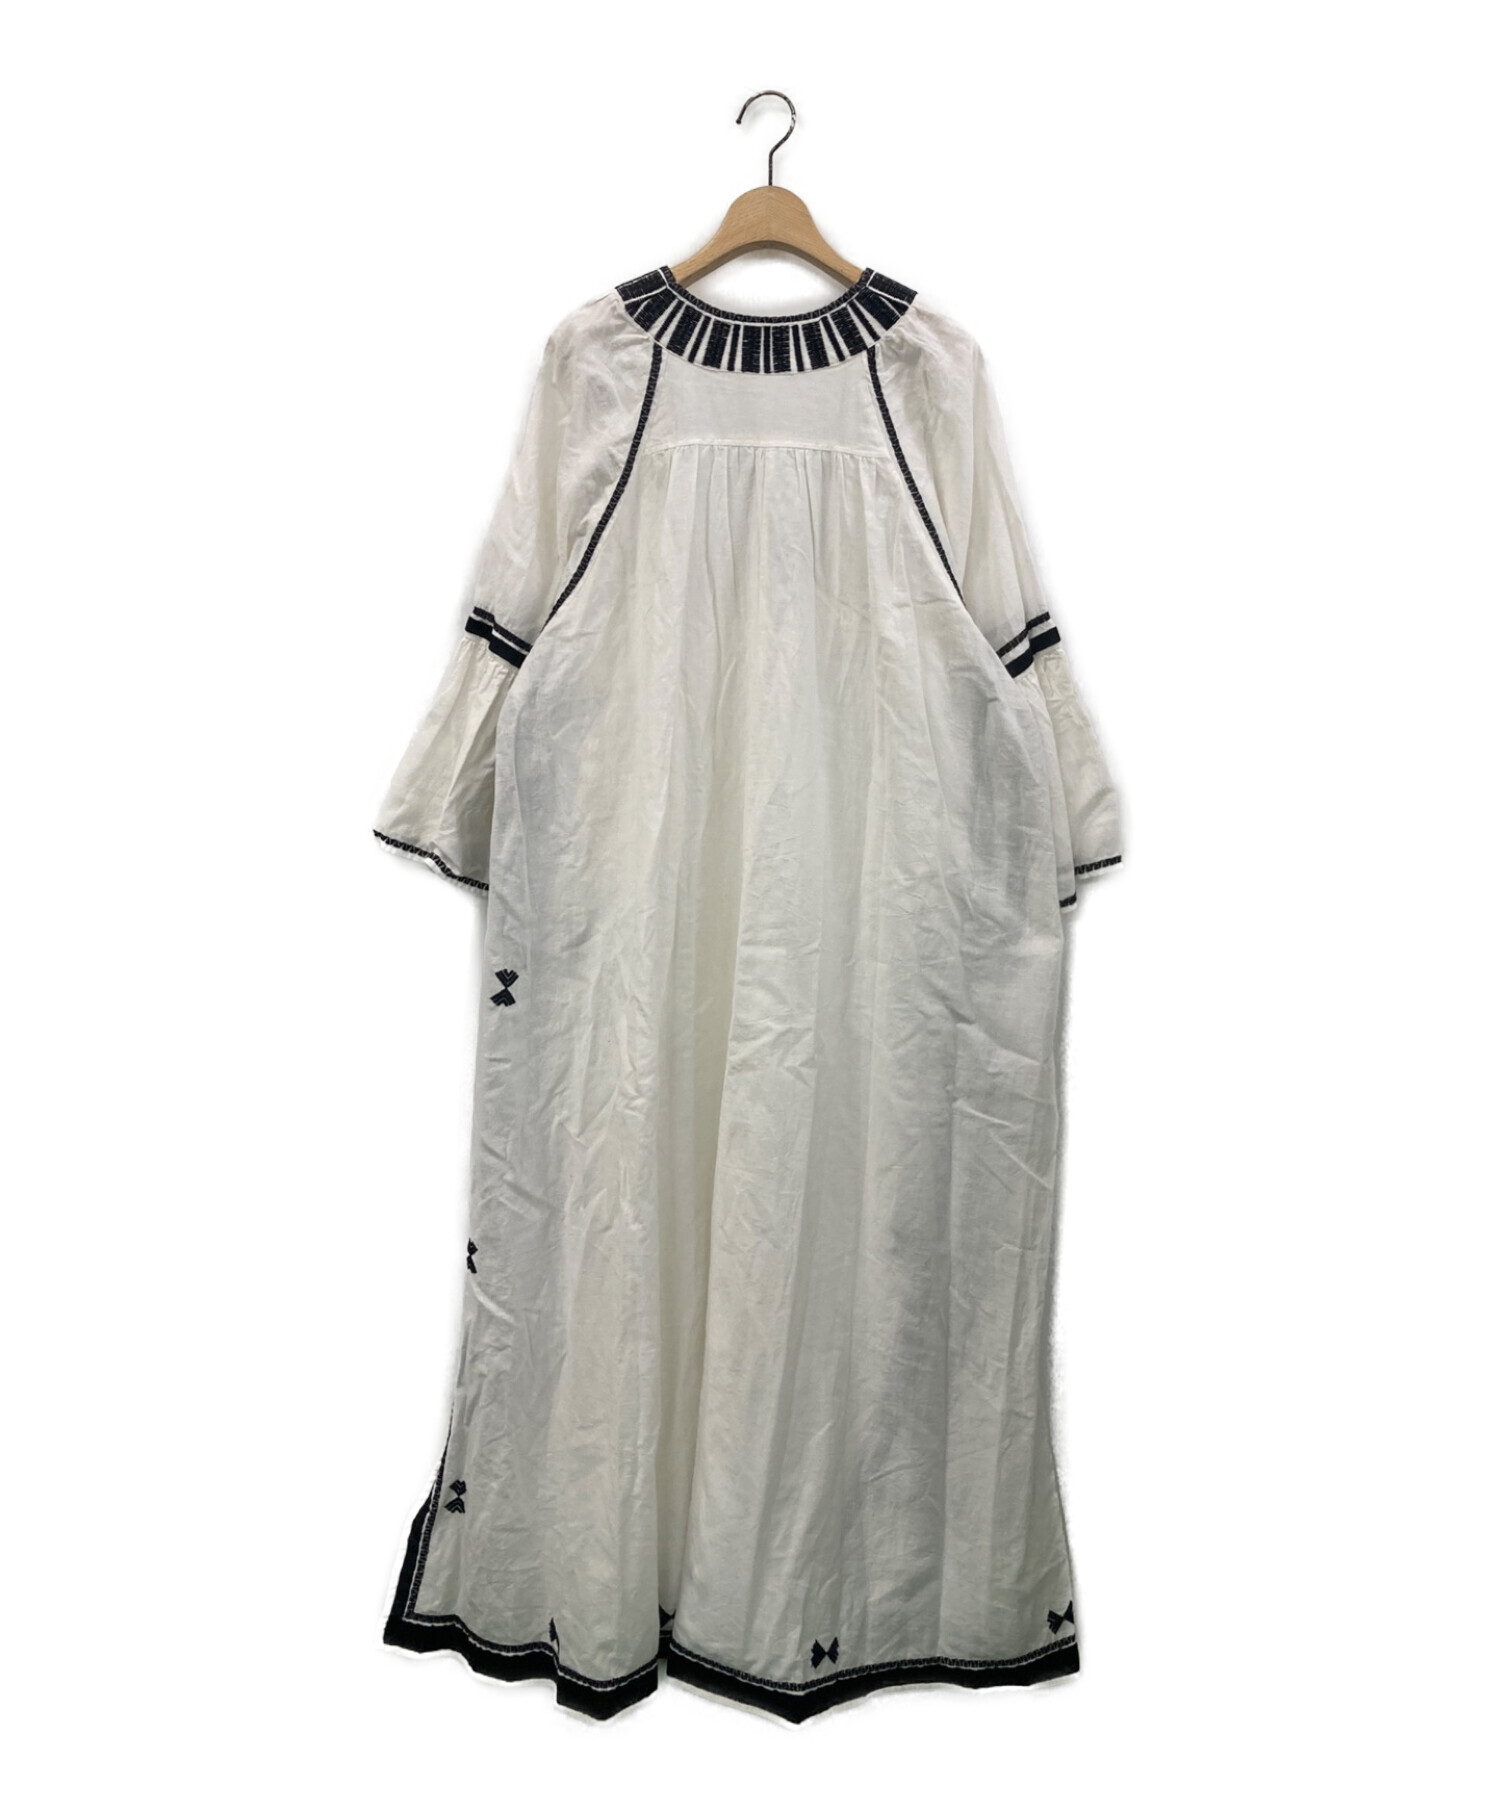 Plage (プラージュ) Line 刺繍 ドレス ホワイト サイズ:38